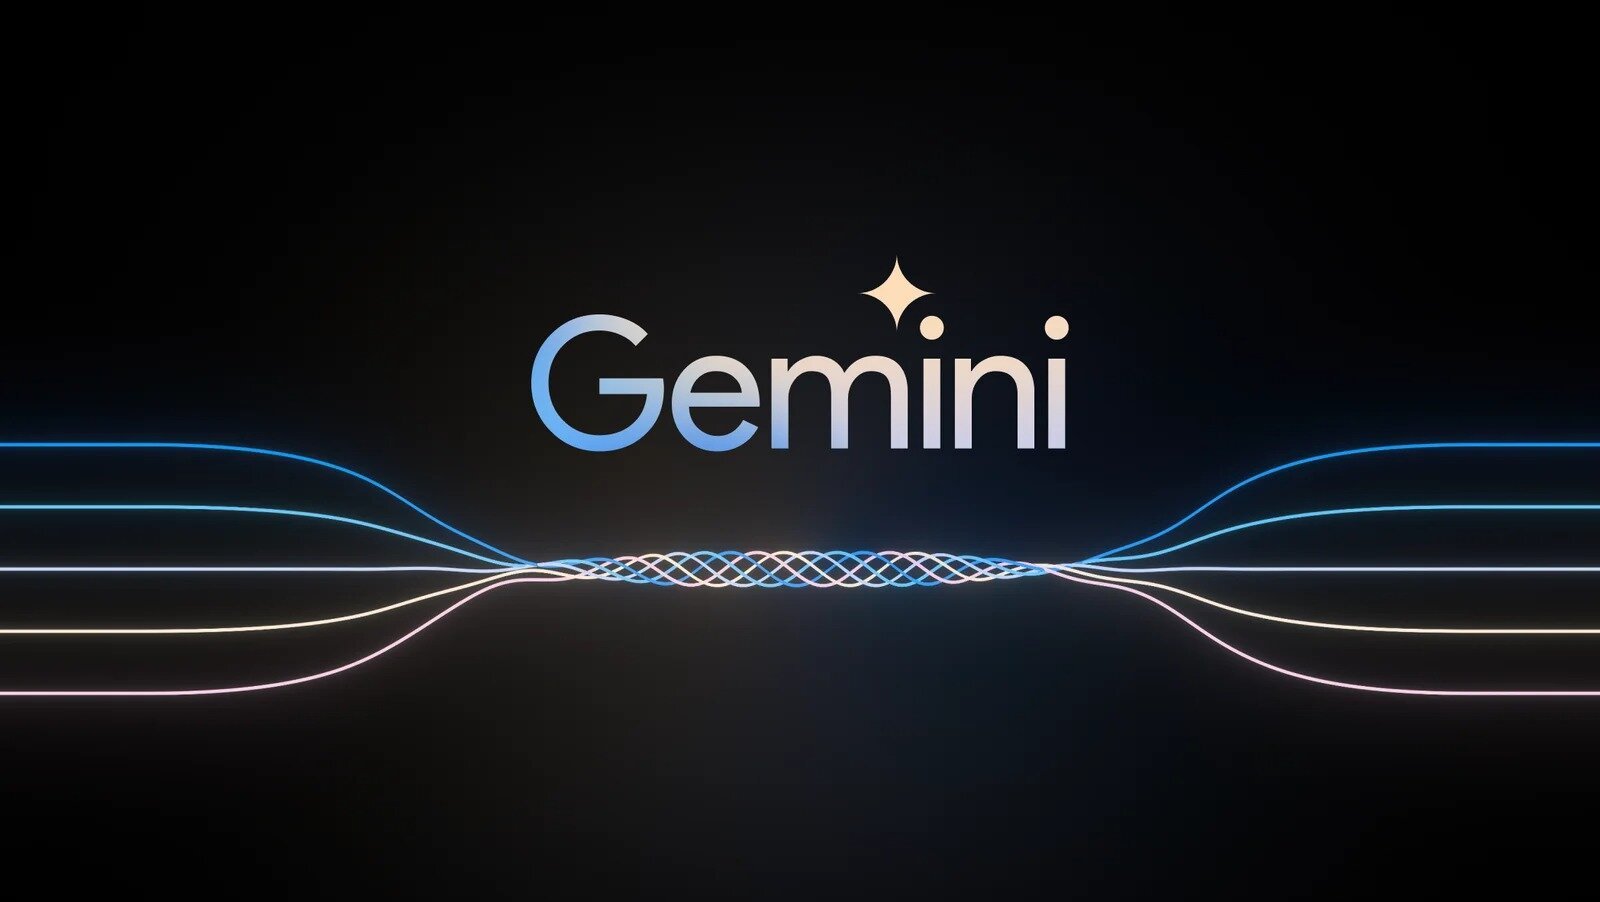 Η Google αποκαλύπτει το Gemini, το μεγαλύτερο γλωσσικό μοντέλο τεχνητής νοημοσύνης της μέχρι σήμερα